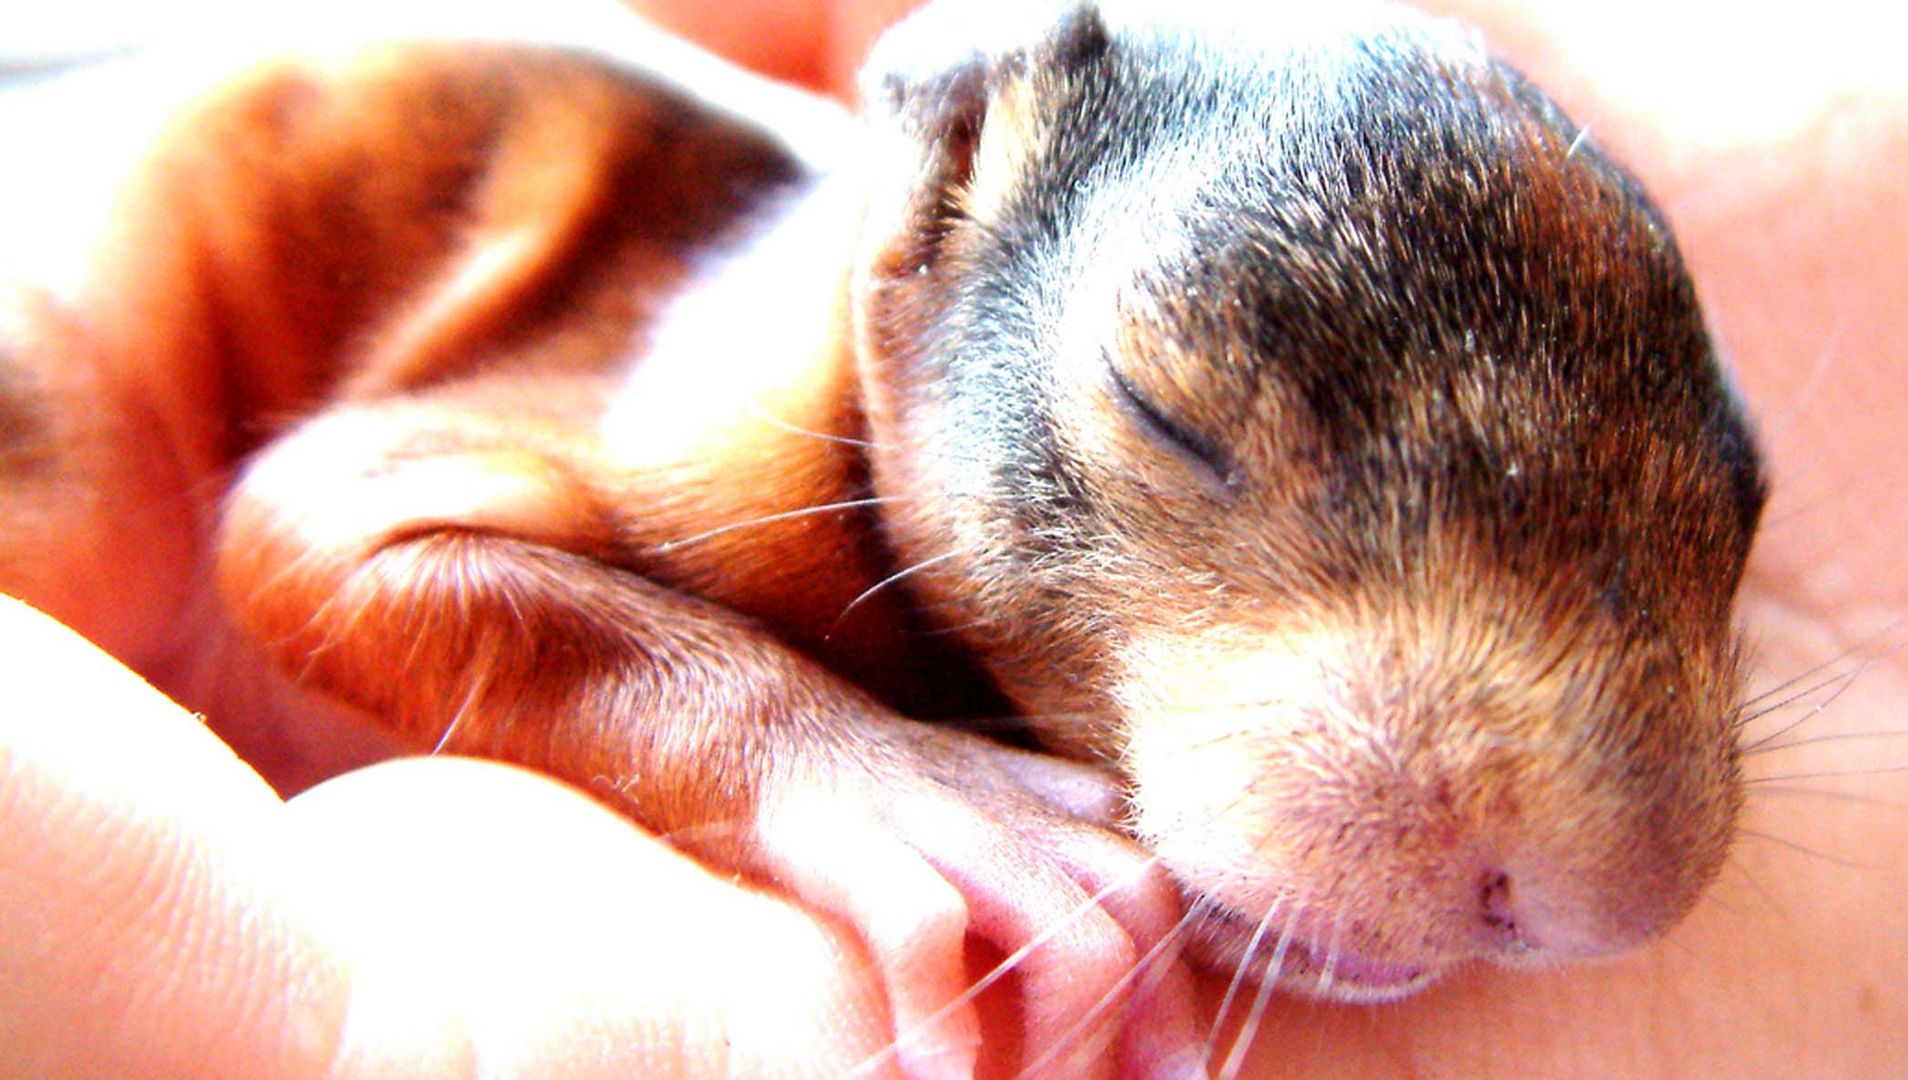 Ein nacktes Eichhörnchenbaby liegt in einer Hand.